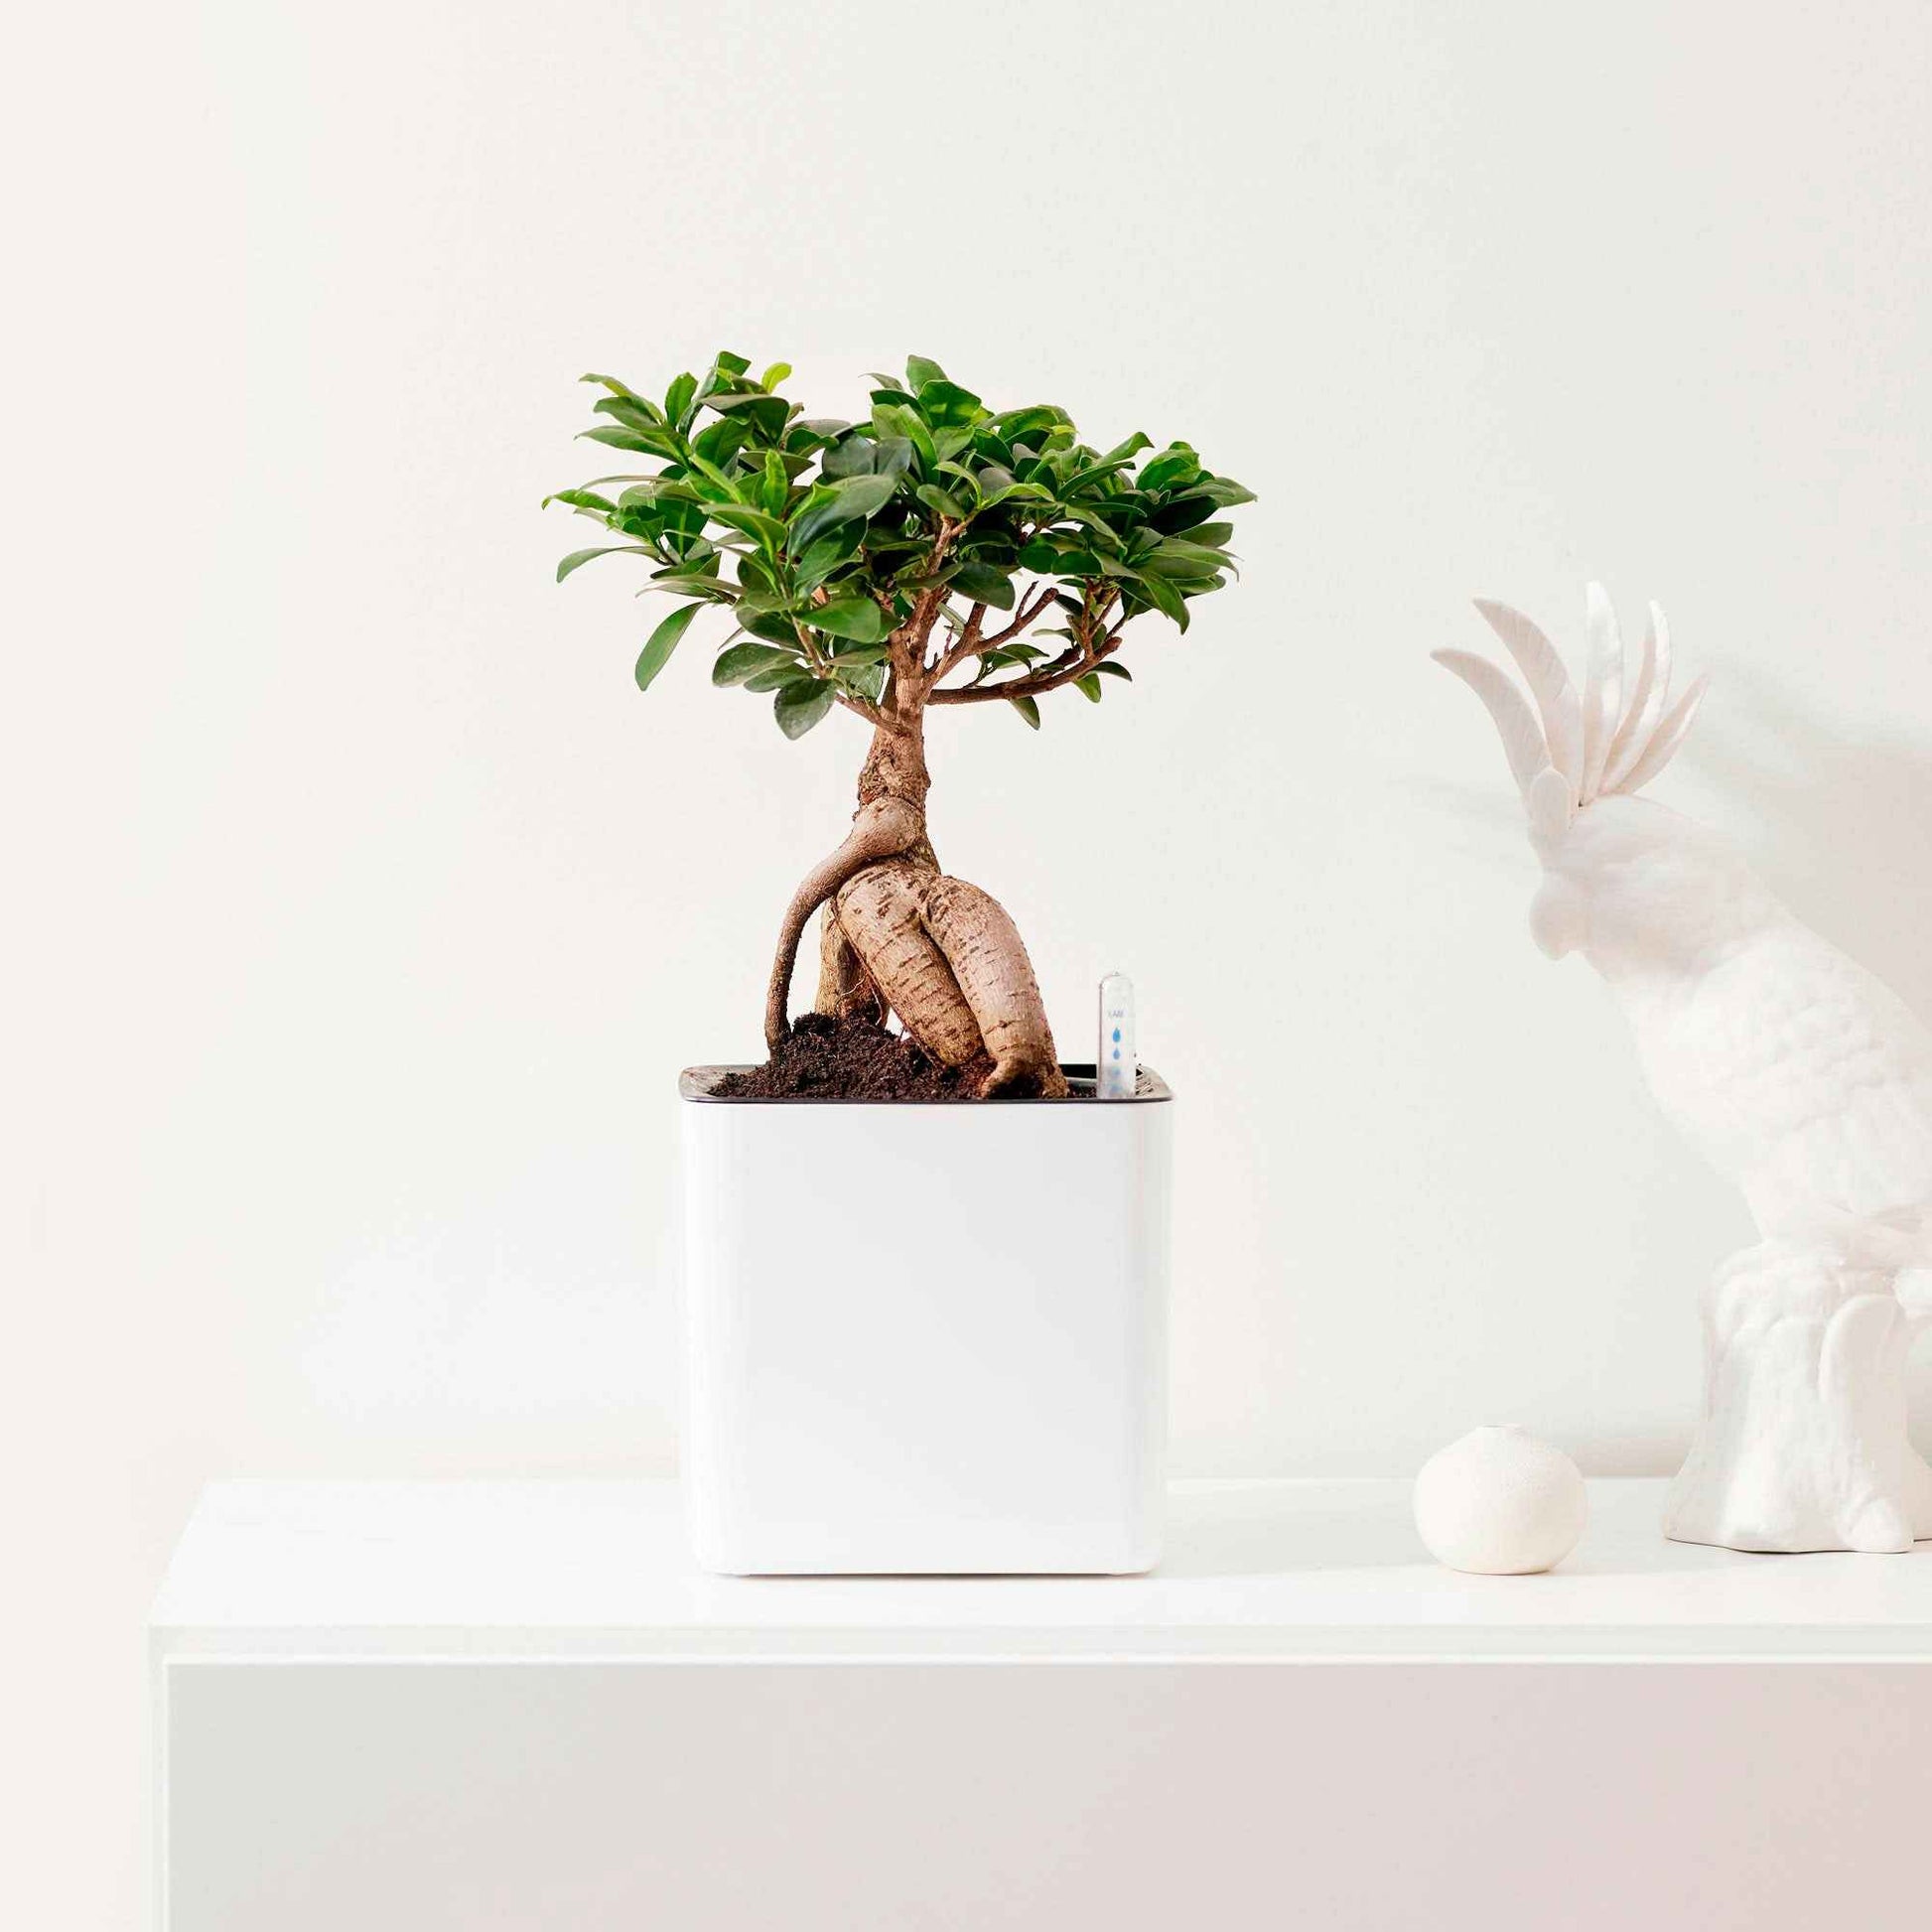 Treurvijg Ficus microcarpa 'Ginseng' avec pot décoratif - Plantes d'intérieur